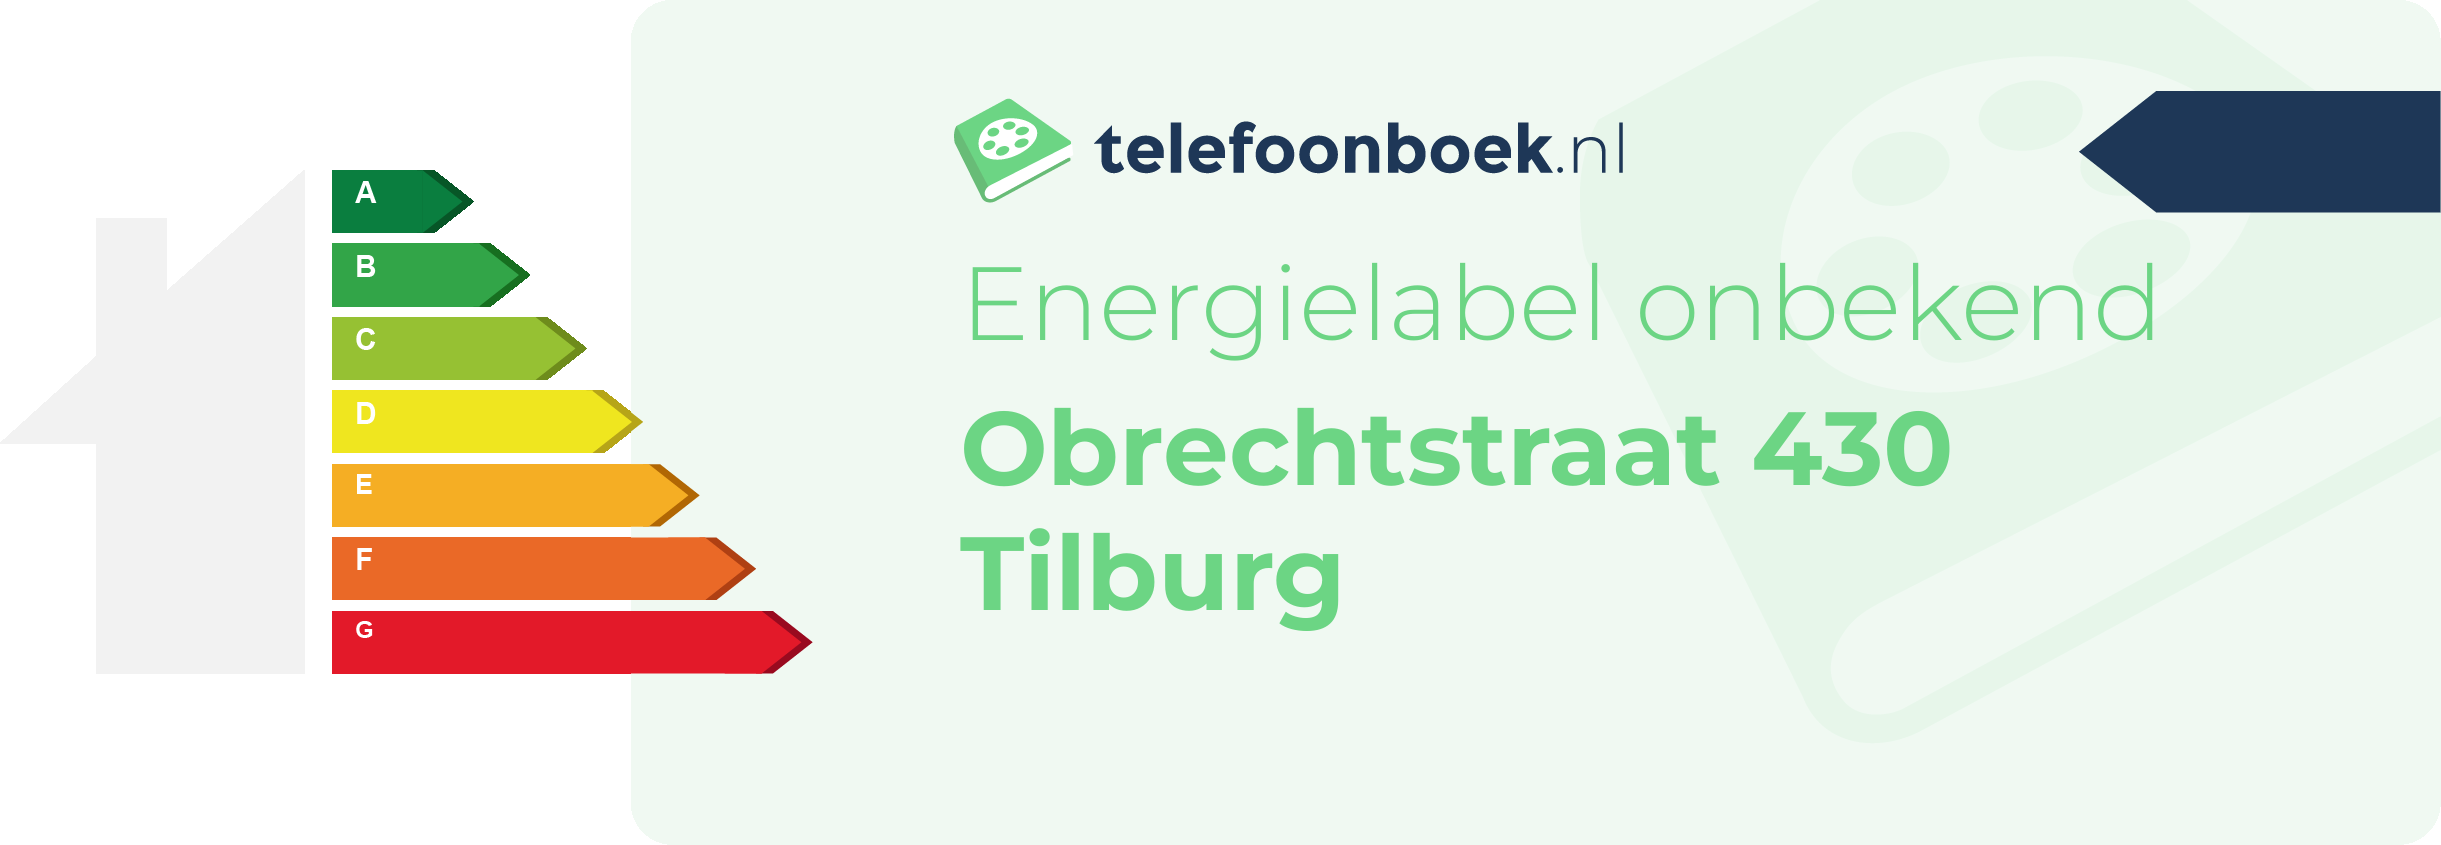 Energielabel Obrechtstraat 430 Tilburg